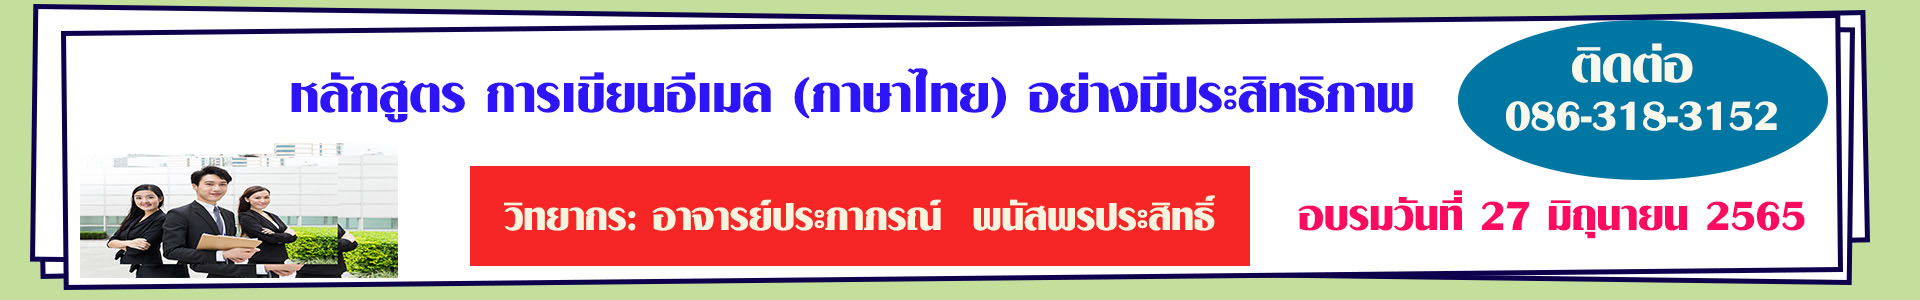 หลักสูตร การเขียนอีเมล (ภาษาไทย) อย่างมีประสิทธิภาพ (อบรม 27 มิ.ย. 65)